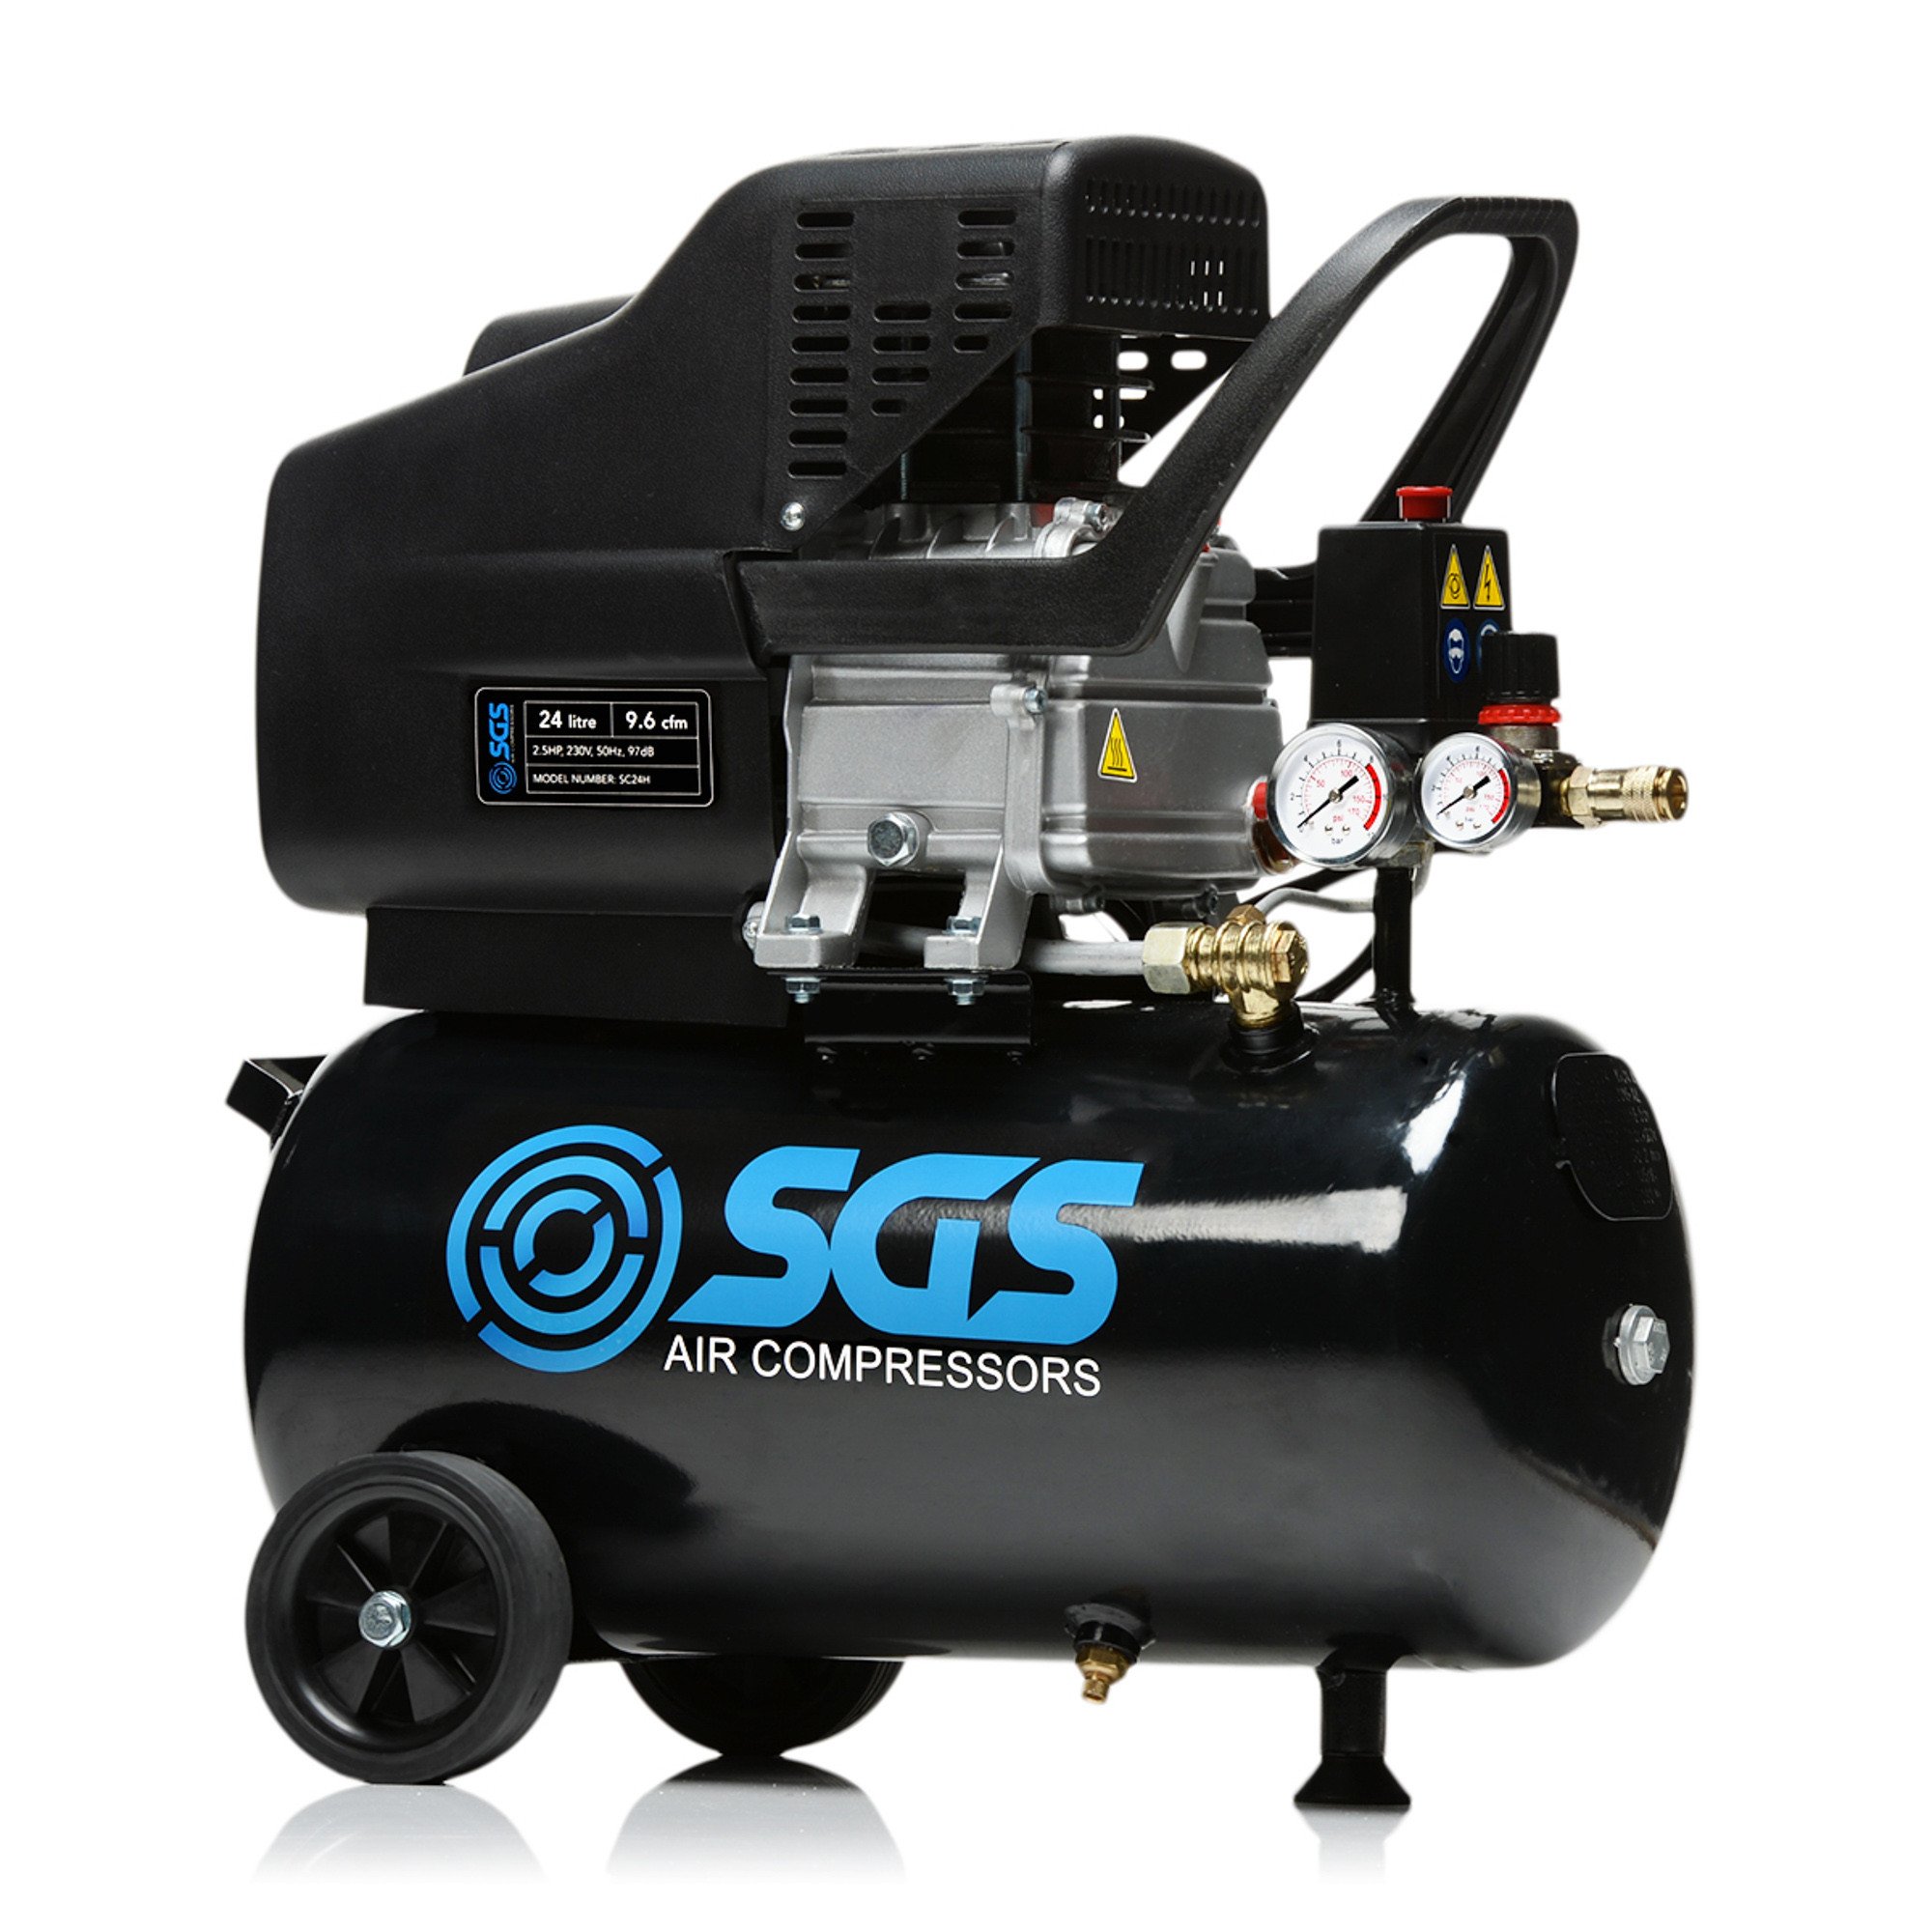 SGS 24升直驱空气压缩机- 9.6CFM 2.5HP 24L